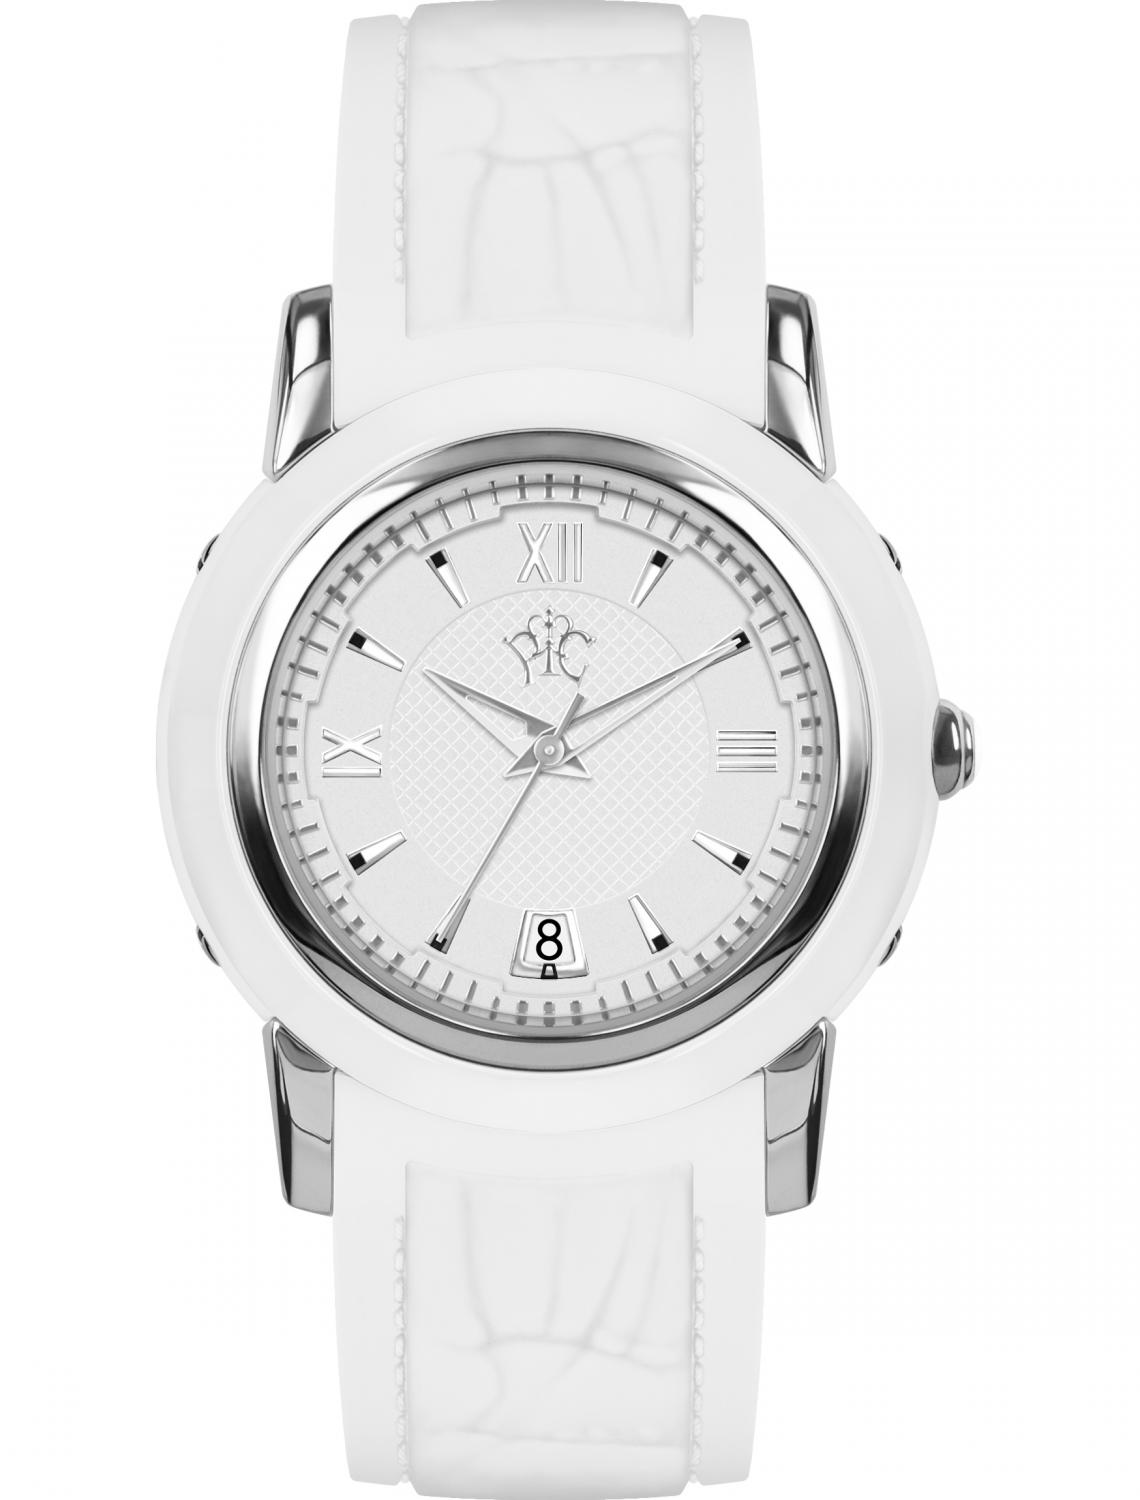 Наручные часы РФС P960401-127W - купить, цены на Мегамаркет